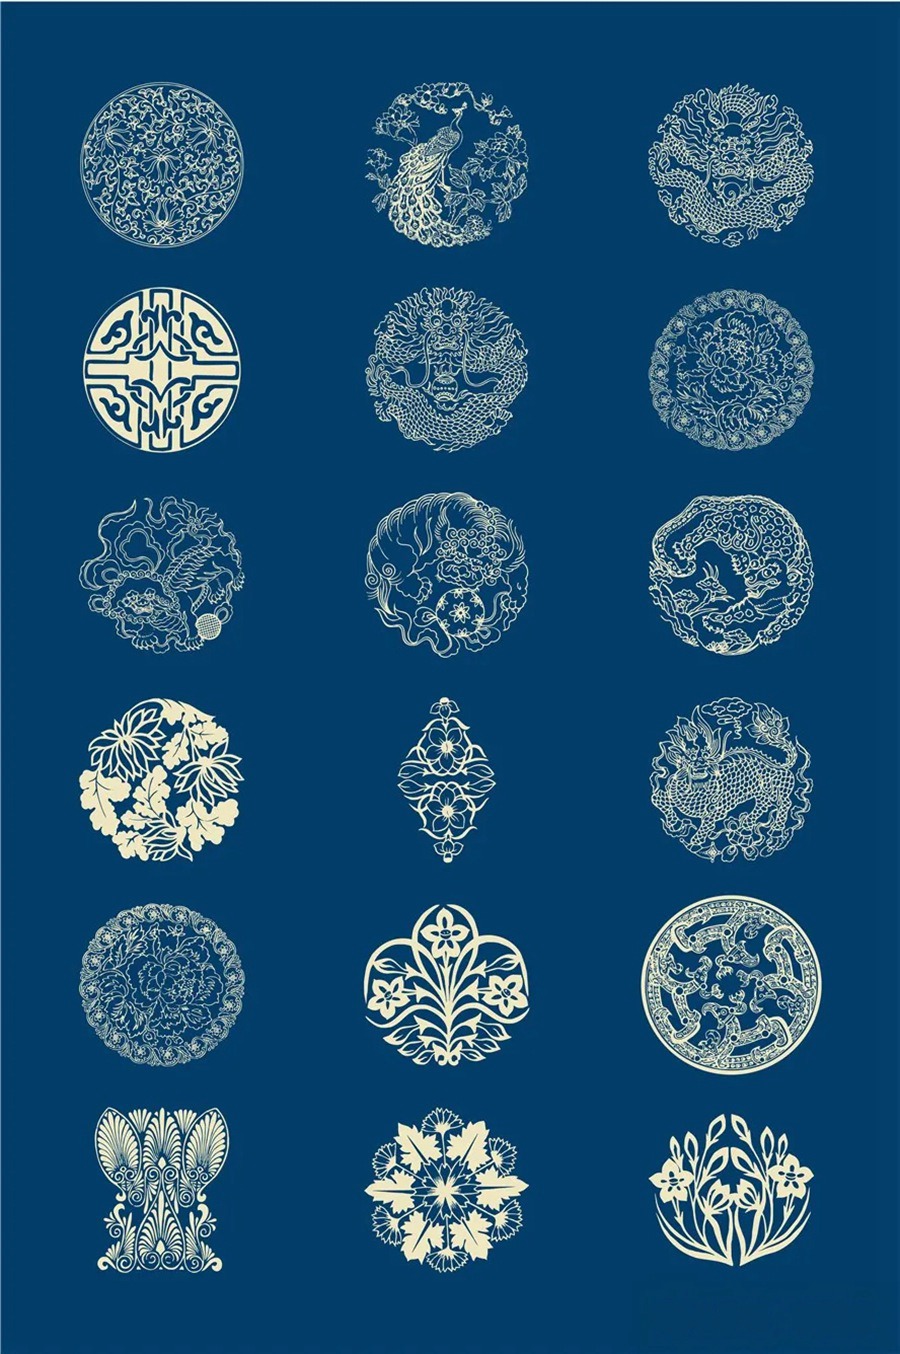 中国风传统古典青花瓷图案花纹图形纹样AI矢量模板花纹设计素材 图片素材 第1张